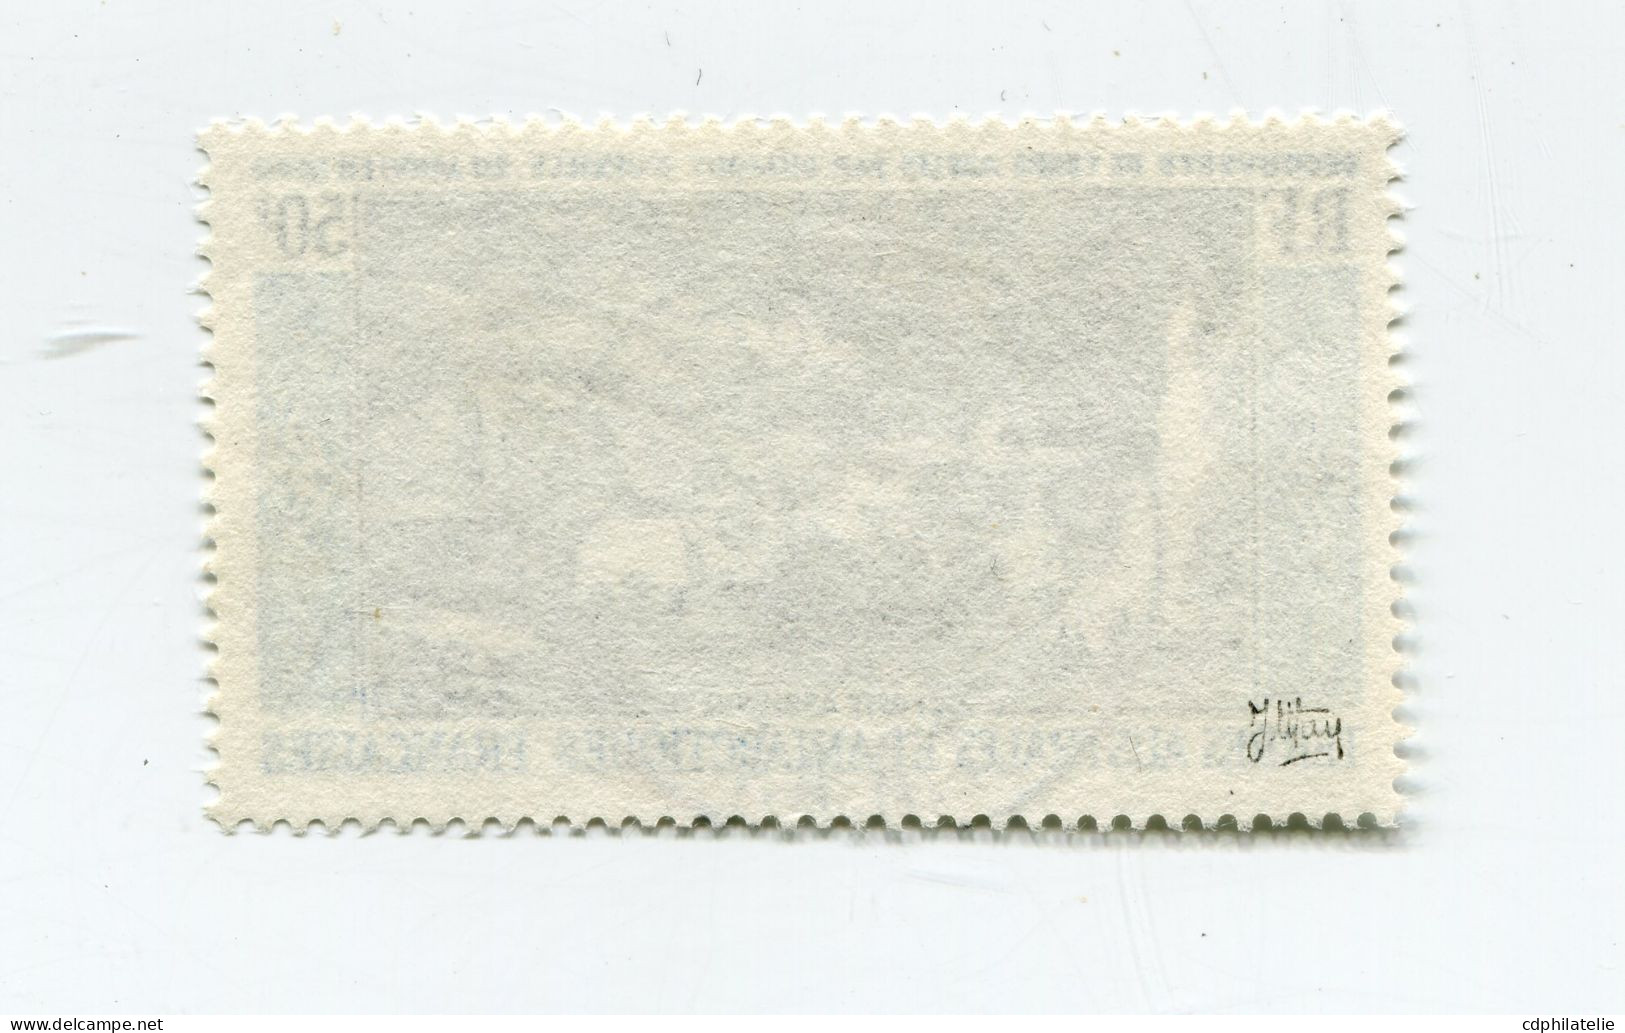 T. A. A. F.  PA 8 O DECOUVERTE DE LA TERRE ADELIE PAR DUMONT D'URVILLE - Used Stamps